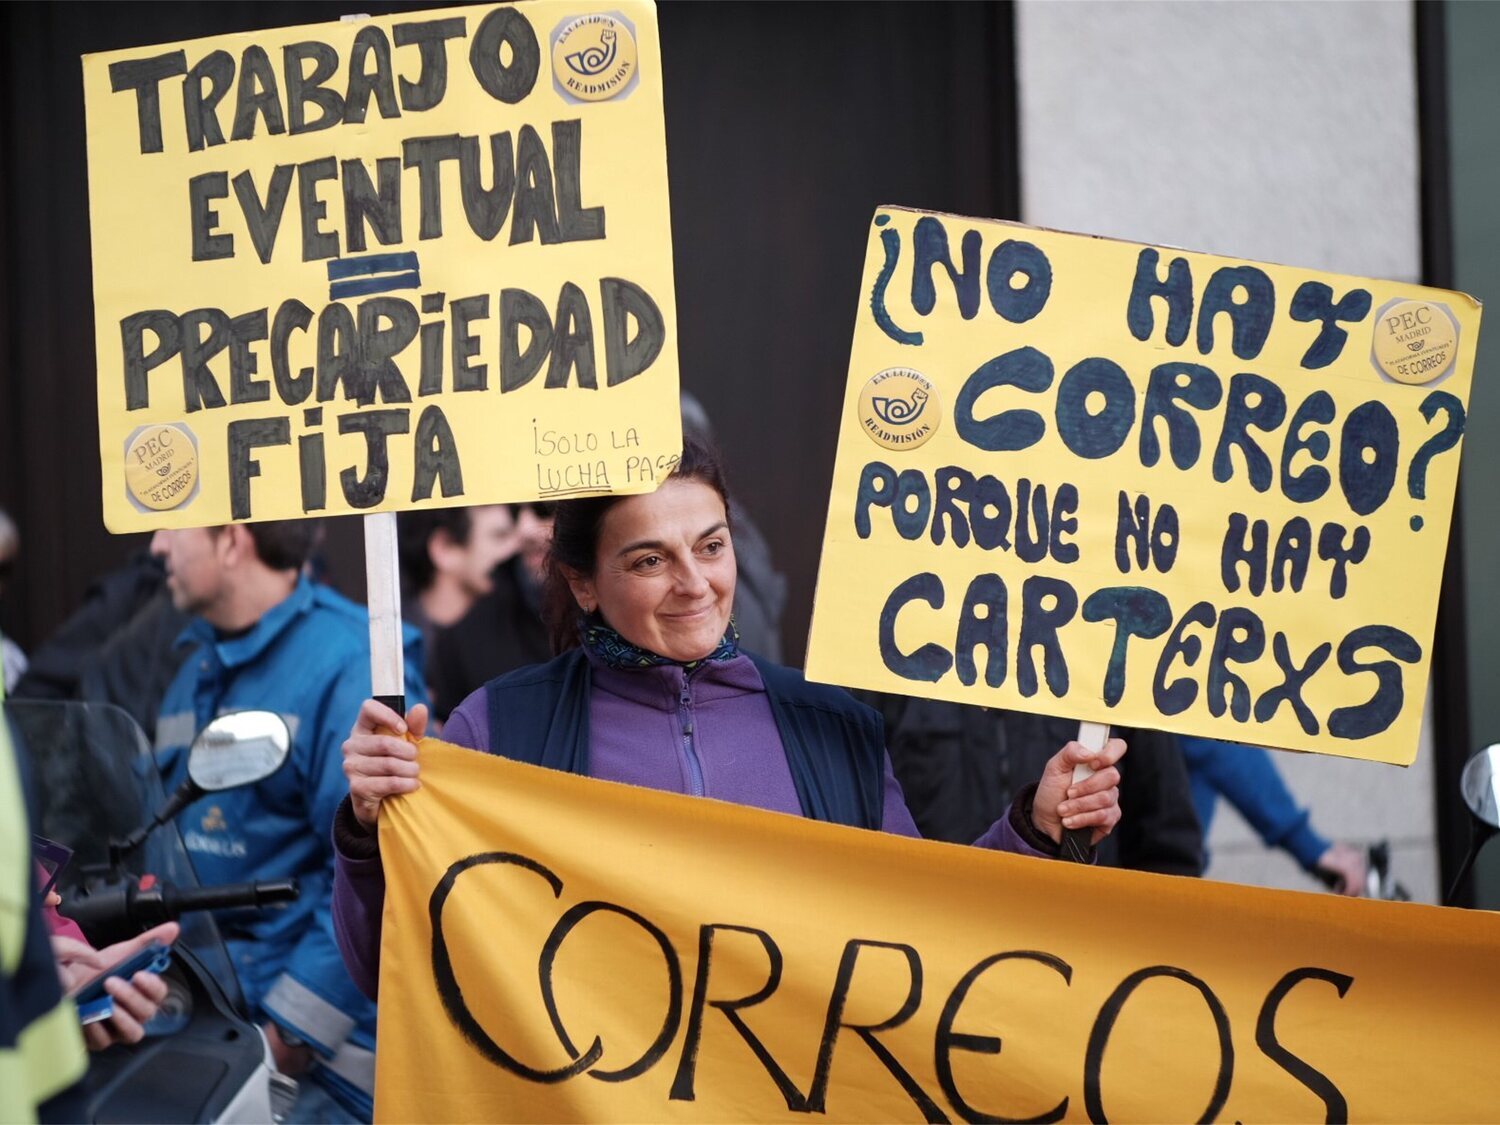 Huelga de tres días en Correos: trabajadores y sindicatos desafían a la empresa en medio de un clima de tensión